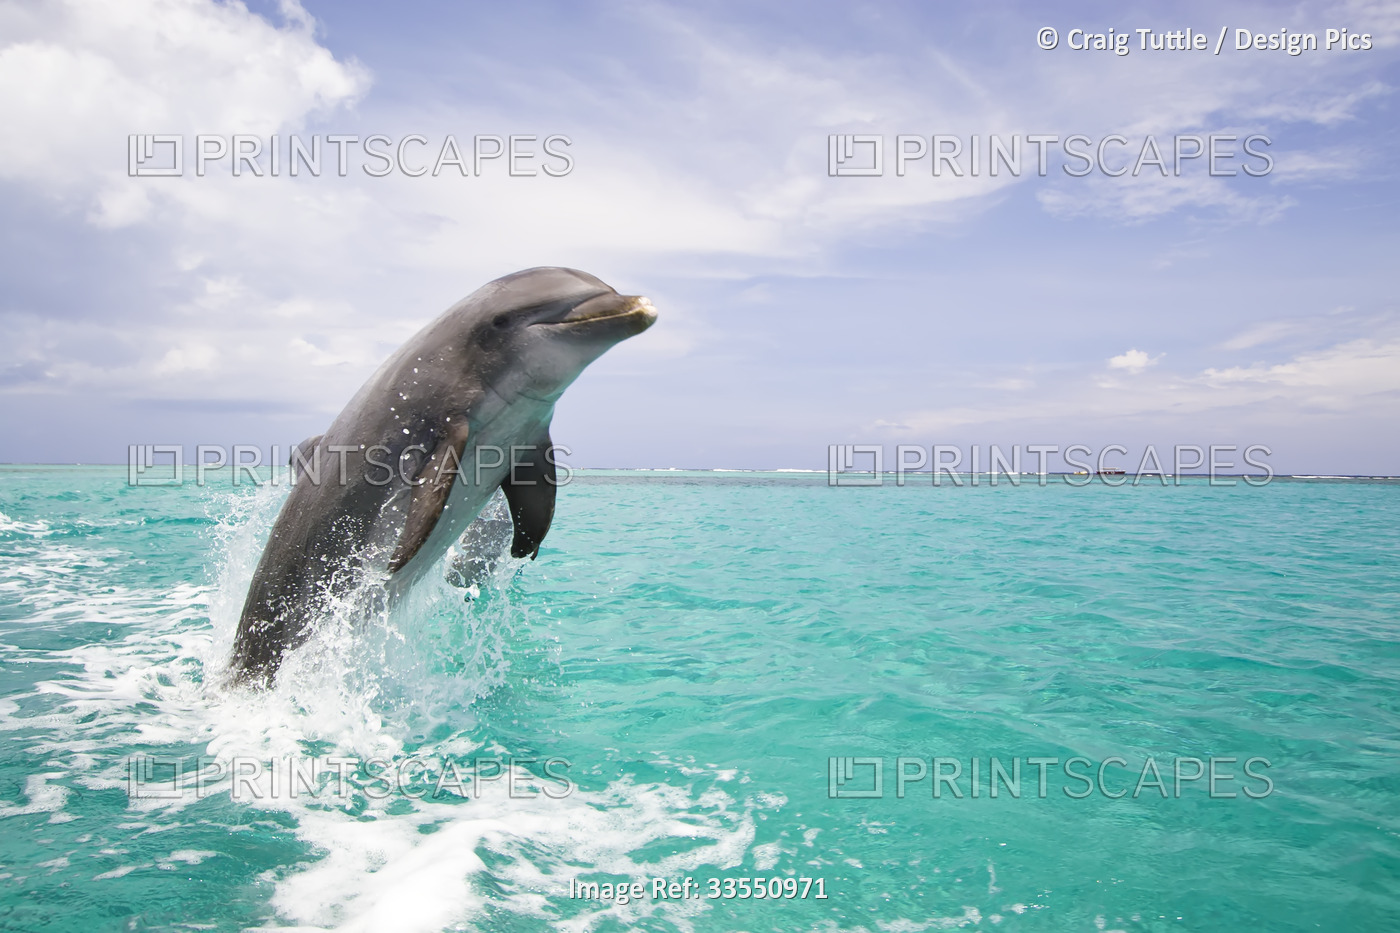 Dolphin breaching from the Caribbean Sea; Roatan, Honduras